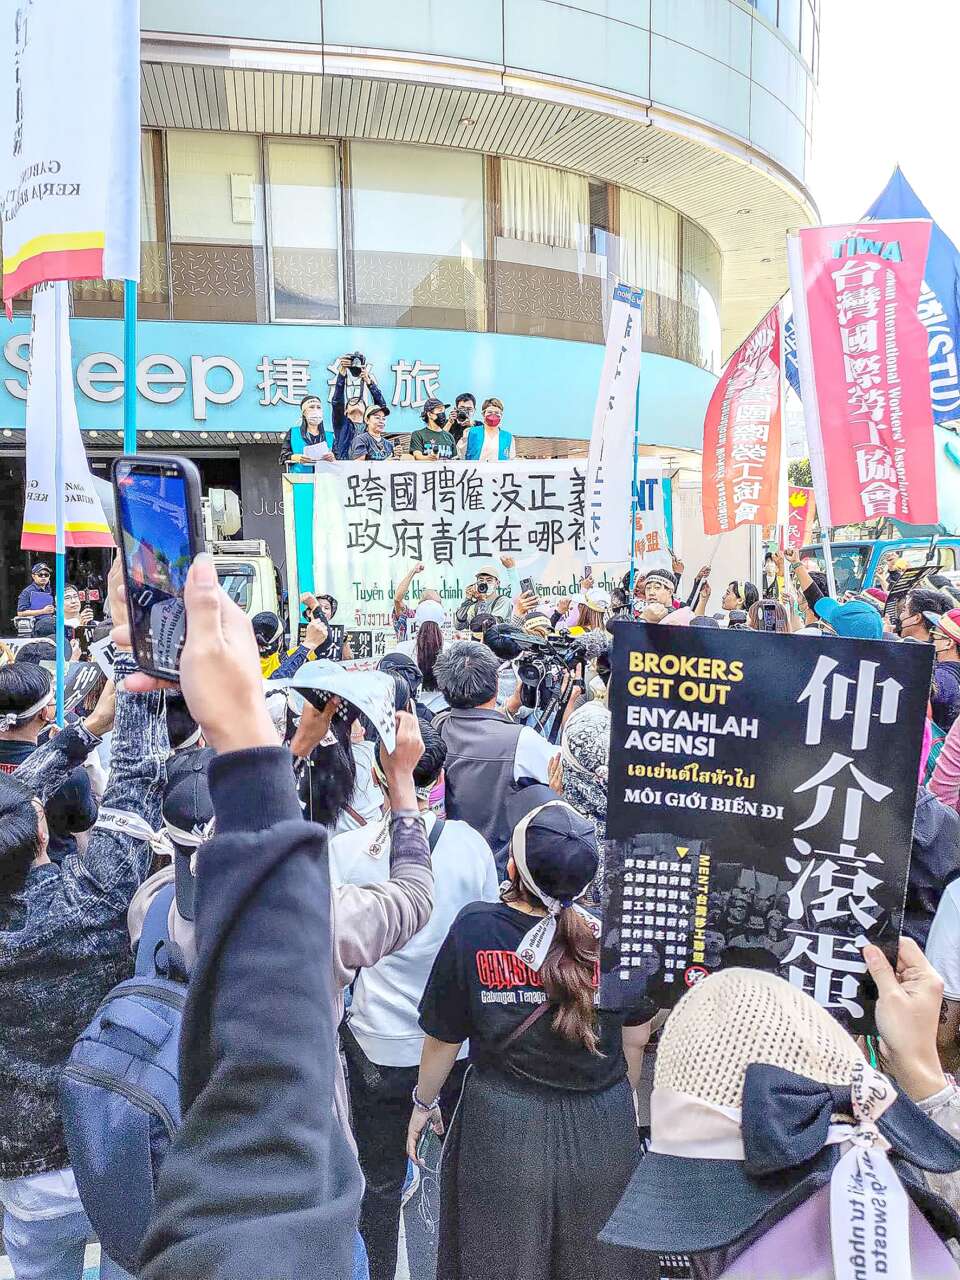 台灣國際勞工協會一直倡導政府應承接移工的居留權利，進一步廢除移工私人中介制度。相片由台灣國際勞工協會提供